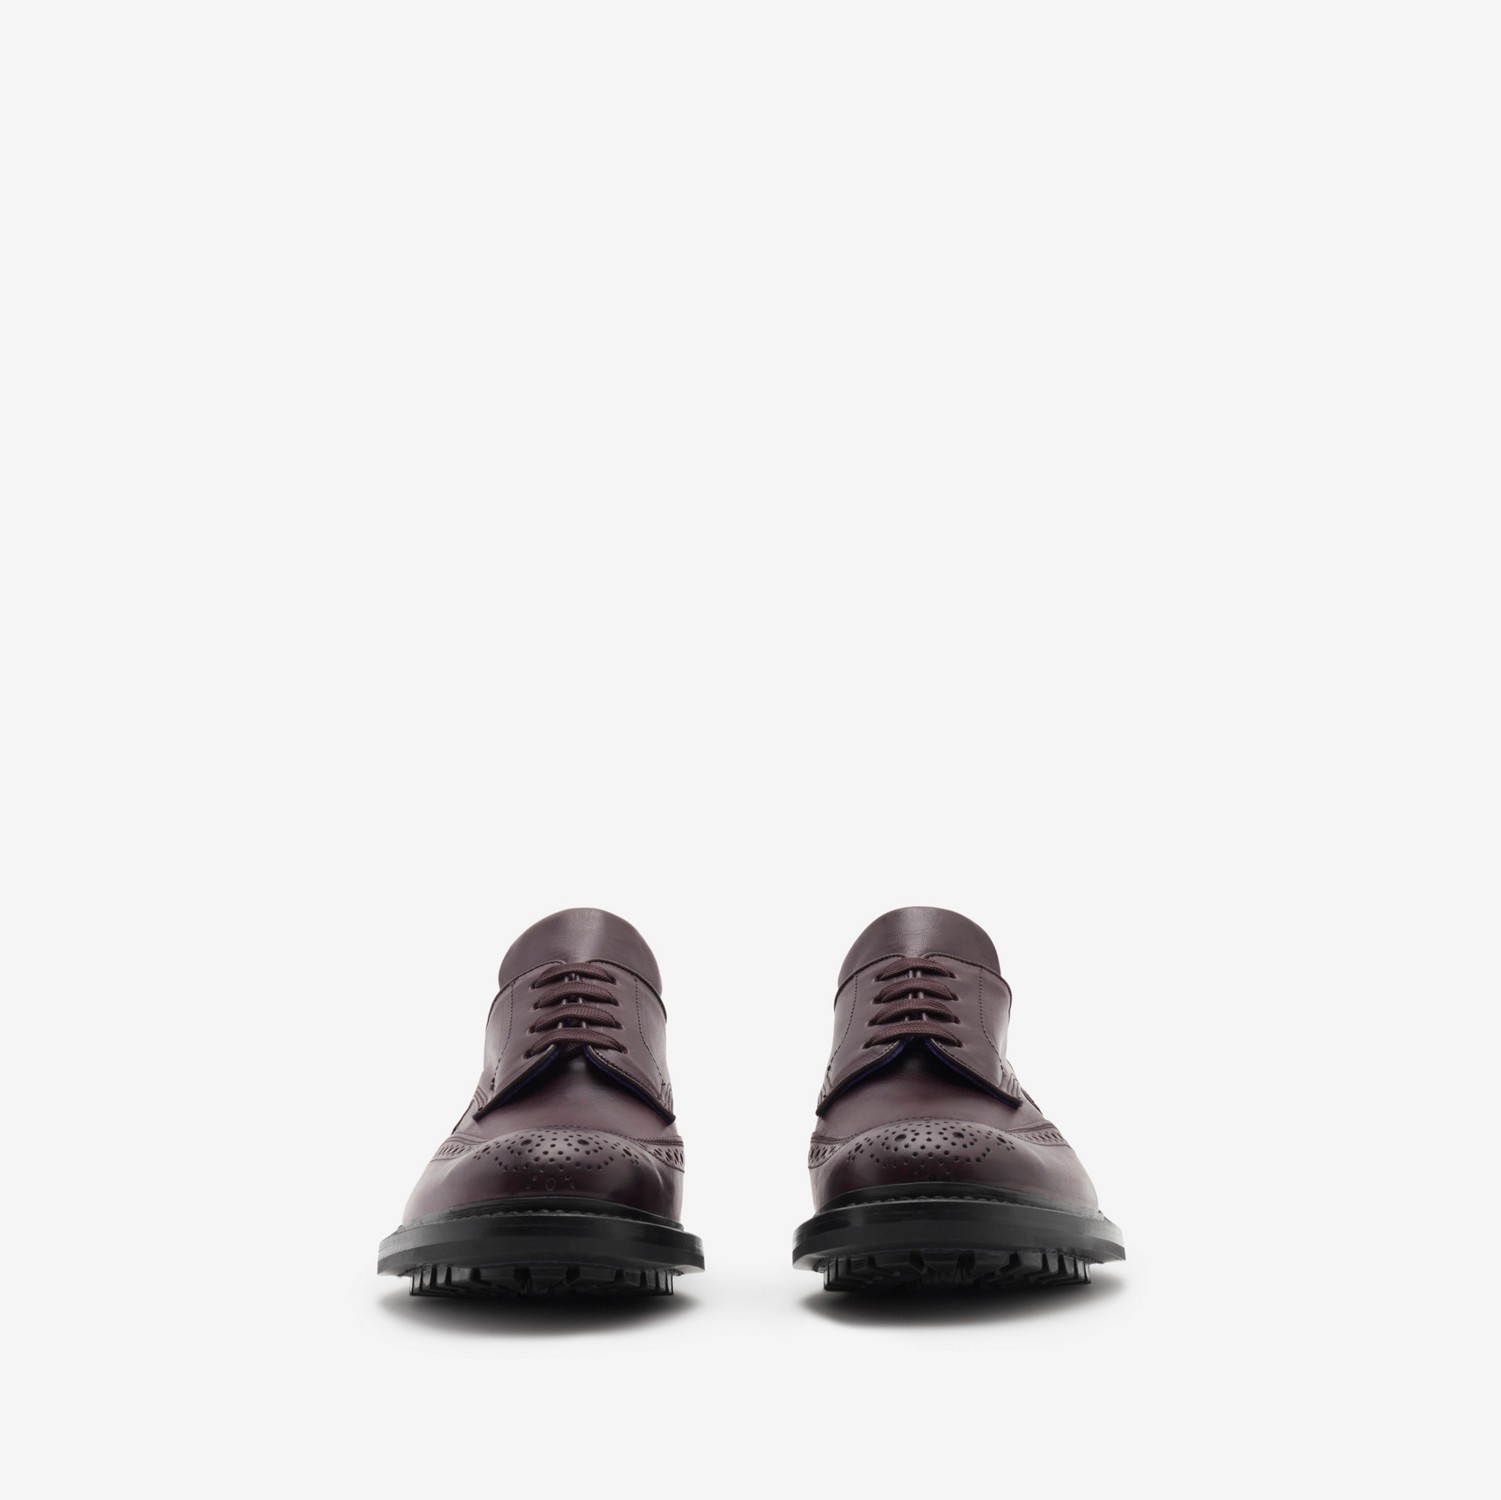 Sapatos brogue Devon de couro (Berinjela) - Mulheres | Burberry® oficial